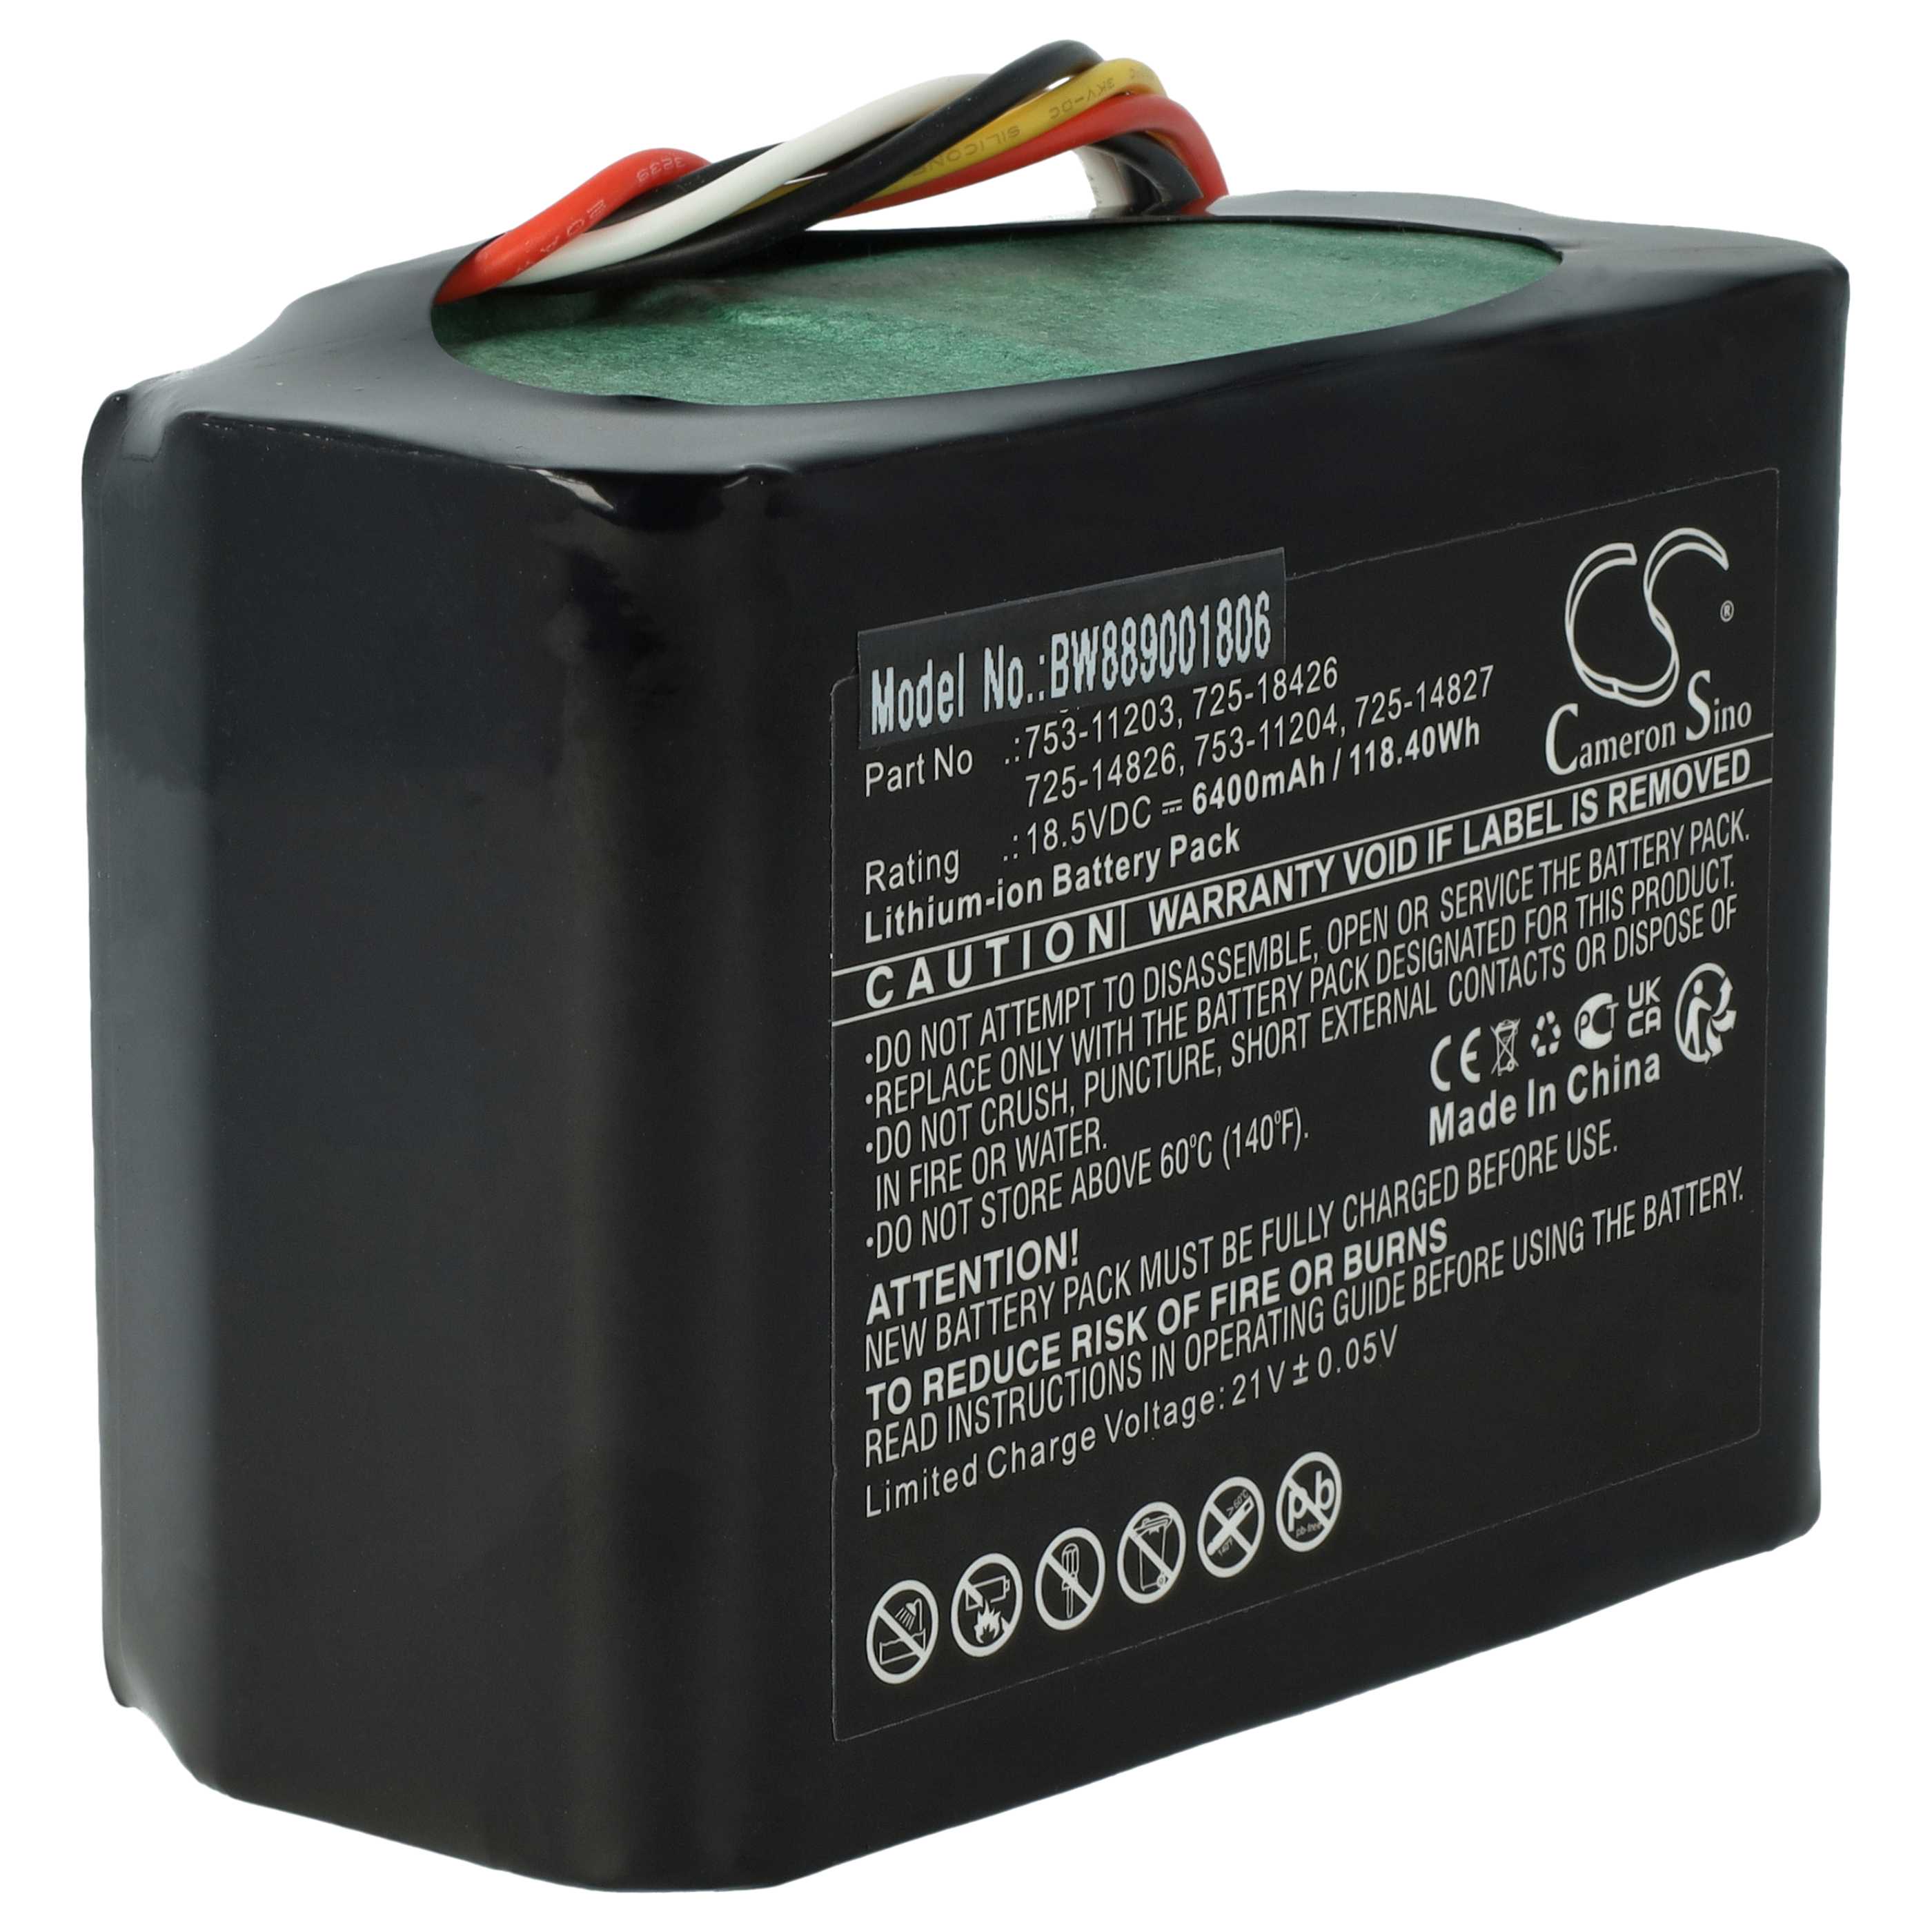 Batterie remplace CubCadet 725-14826, 725-14827, 725-18426 pour outil de jardinage - 6400mAh 18,5V Li-ion